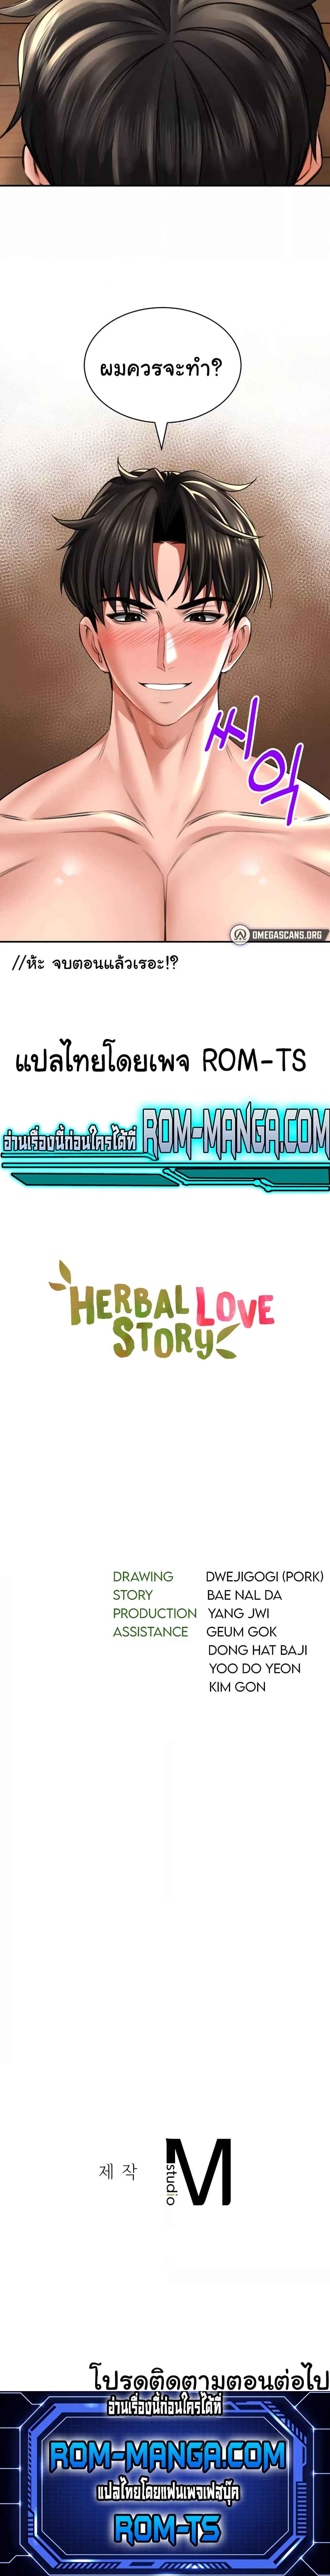 Herbal Love Story 9 (6)